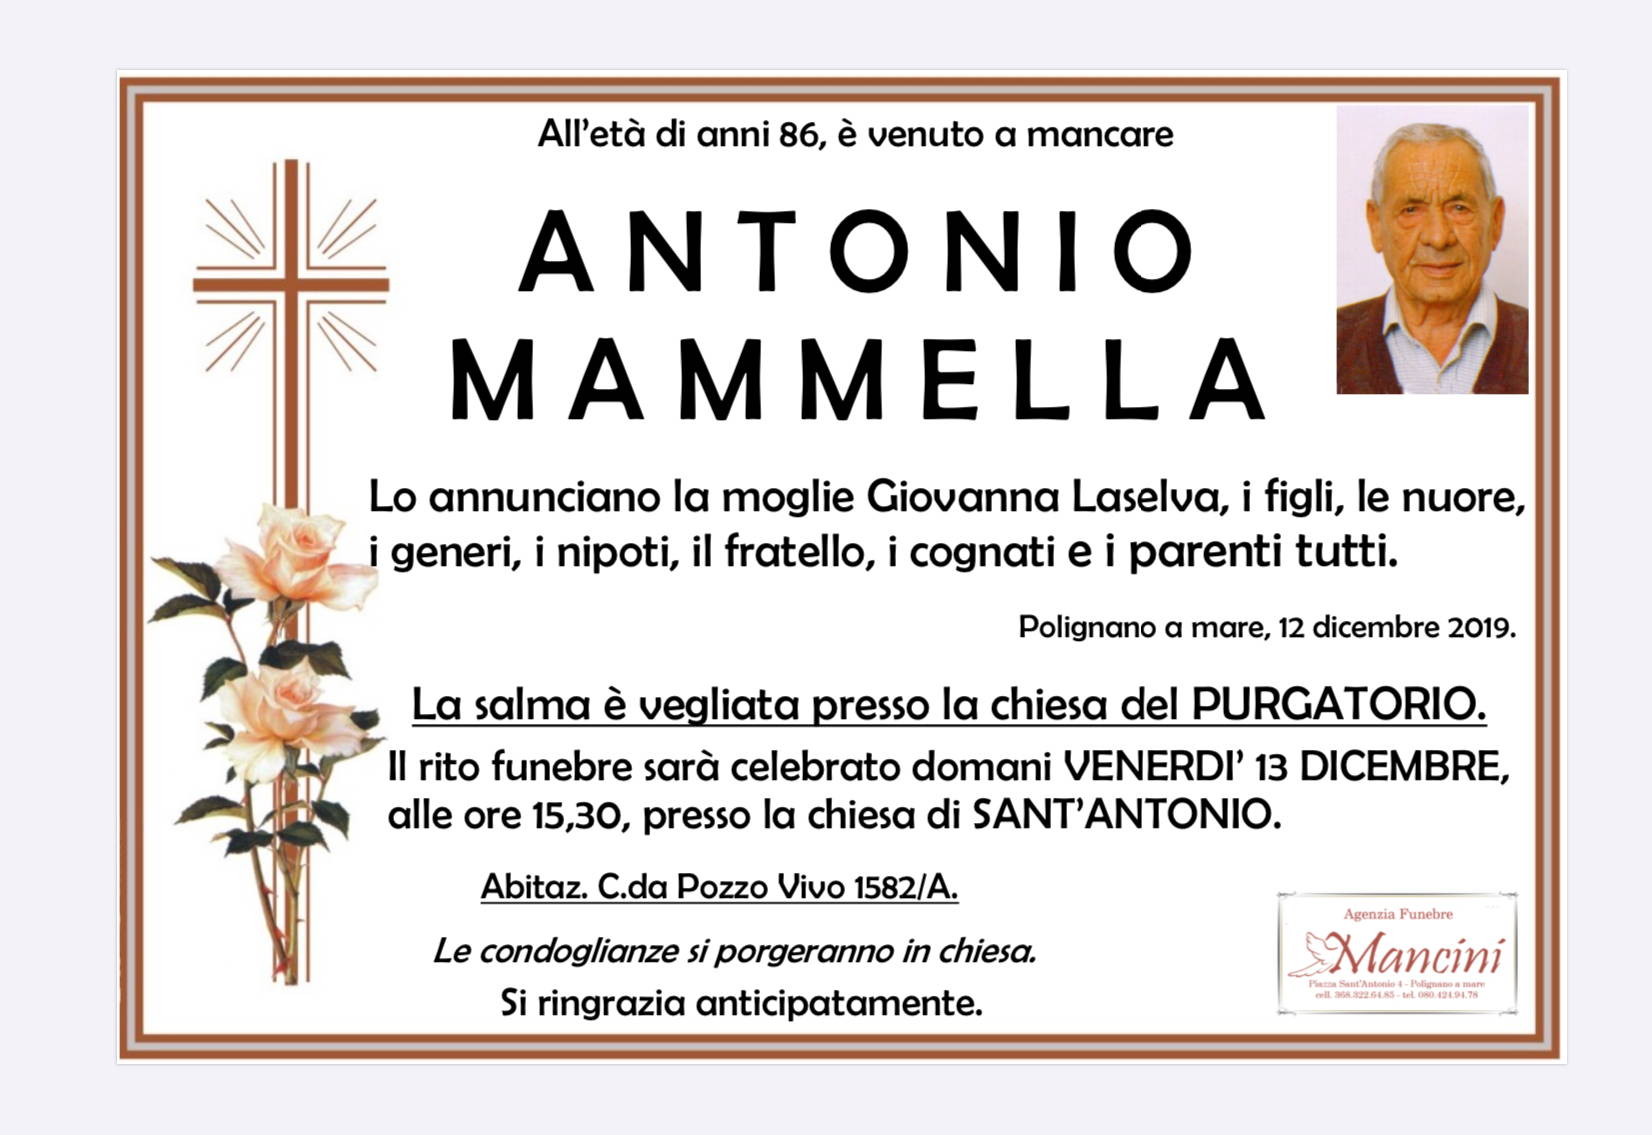 Antonio Mammella